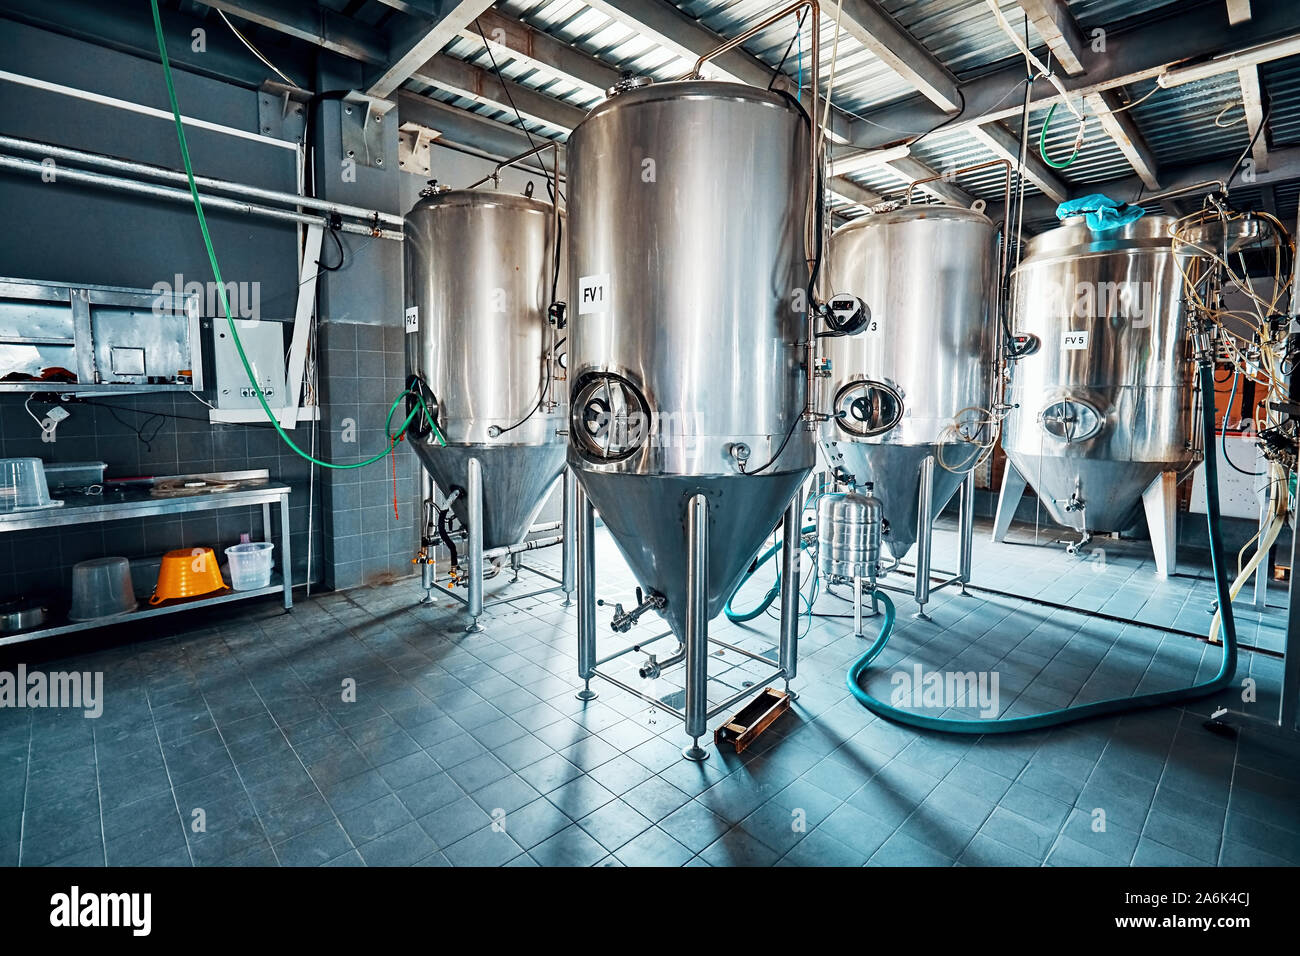 Fermantation mash di recipienti o serbatoi di caldaia in una fabbrica di birra. Birreria impianto interno. Foto Stock